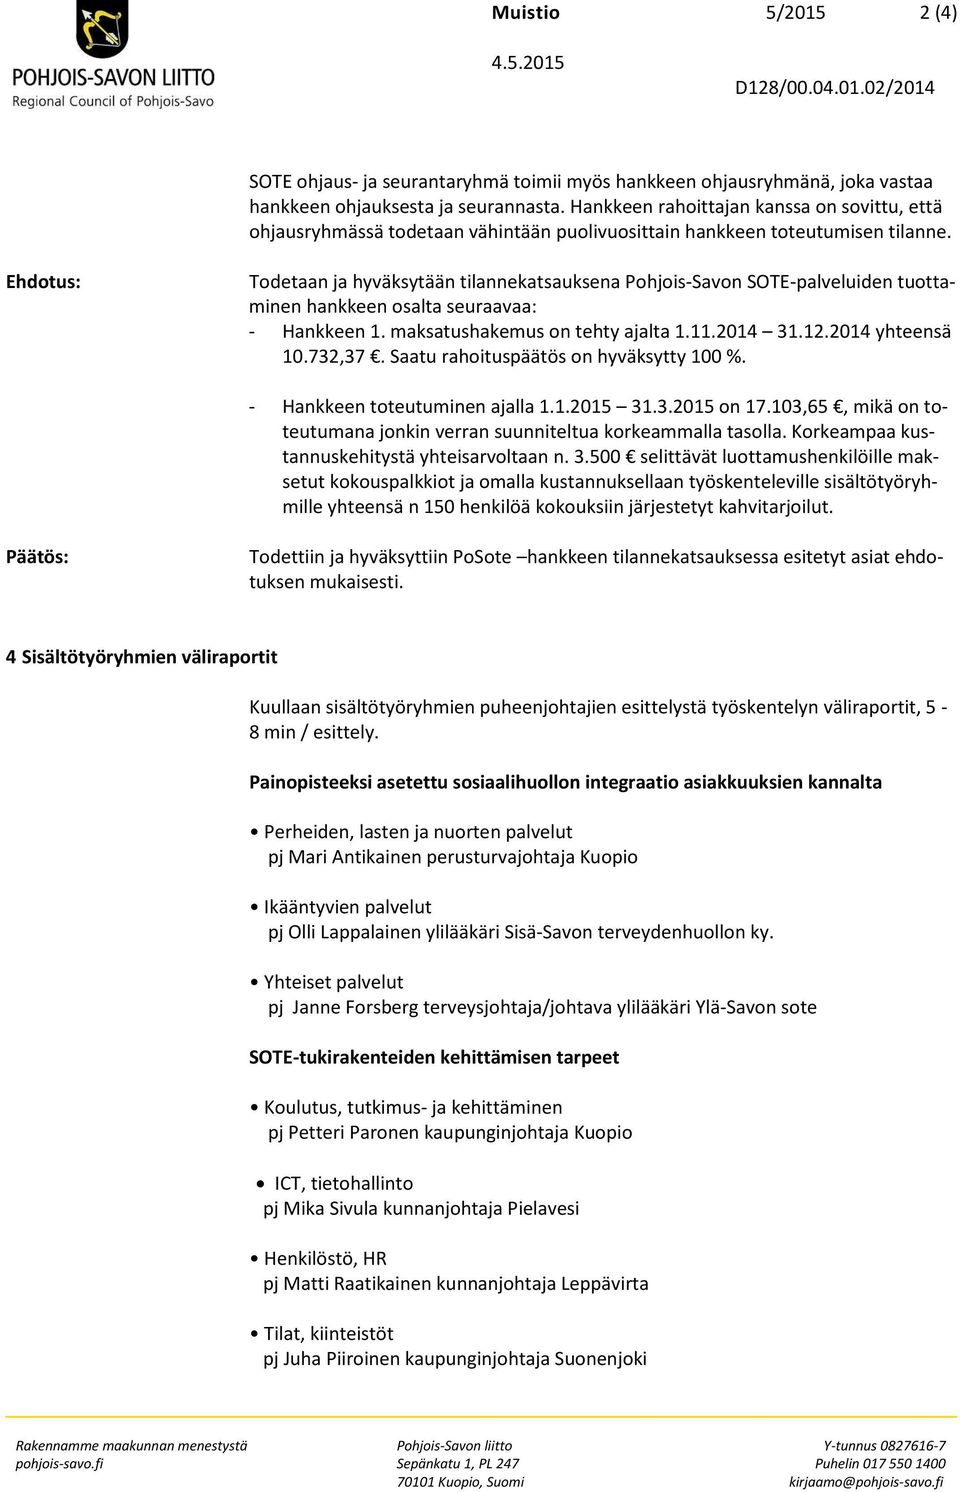 Ehdotus: Todetaan ja hyväksytään tilannekatsauksena Pohjois-Savon SOTE-palveluiden tuottaminen hankkeen osalta seuraavaa: - Hankkeen 1. maksatushakemus on tehty ajalta 1.11.2014 31.12.